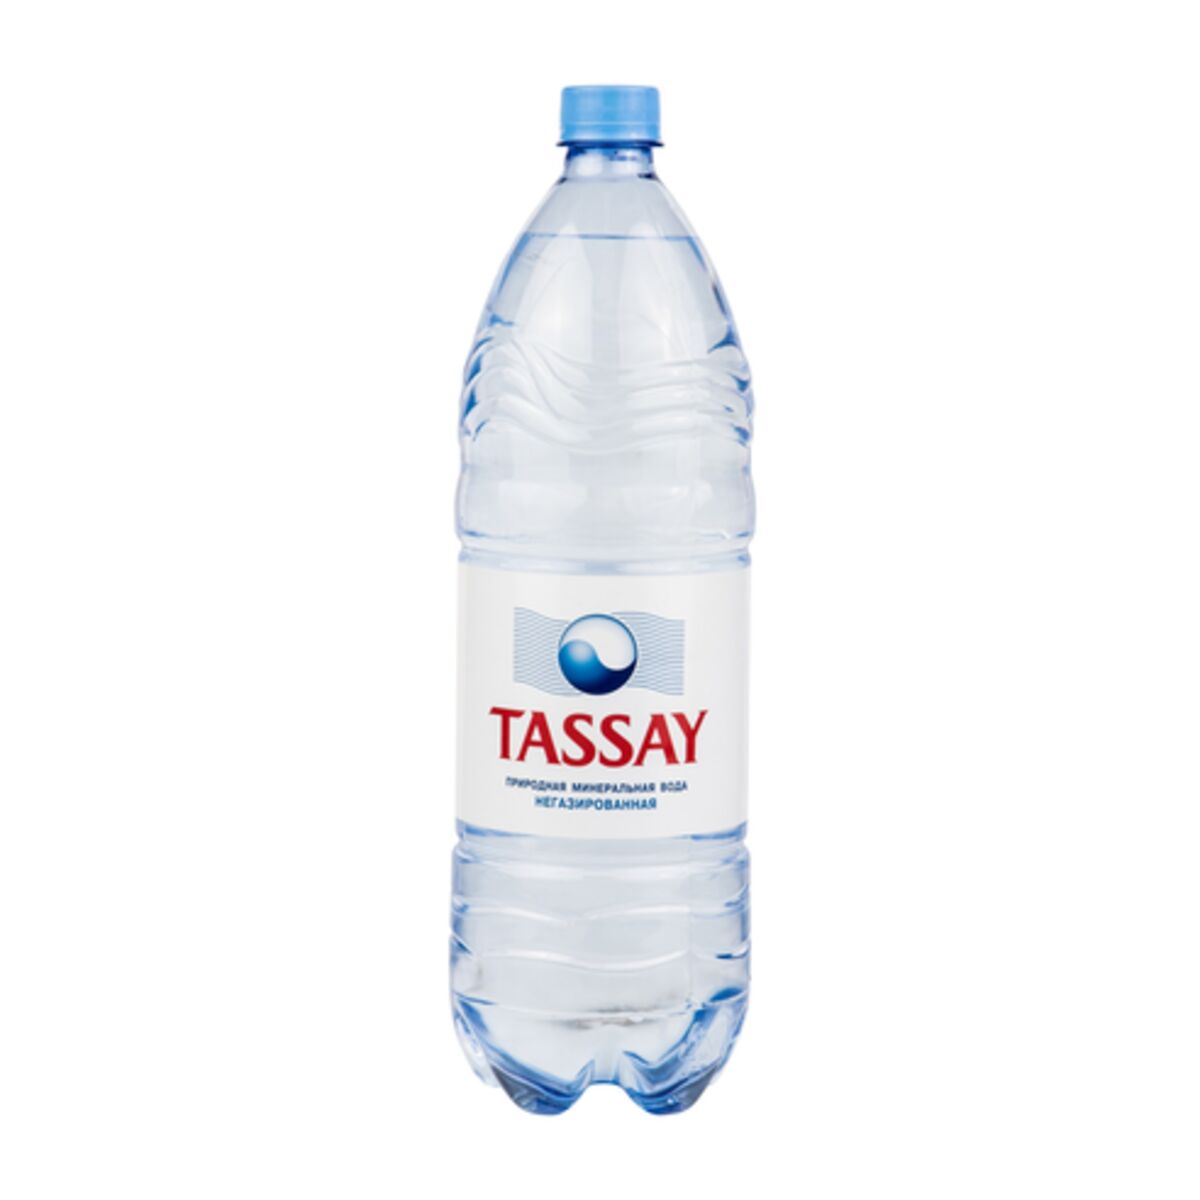 Столовая негазированная вода. Минеральная вода Tassay. Вода Tassay Emerald минеральная ГАЗ.750мл. Вода   мин/природная Тассай ГАЗ 1,5л ПЭТ. Казахская вода минеральная Tassay.